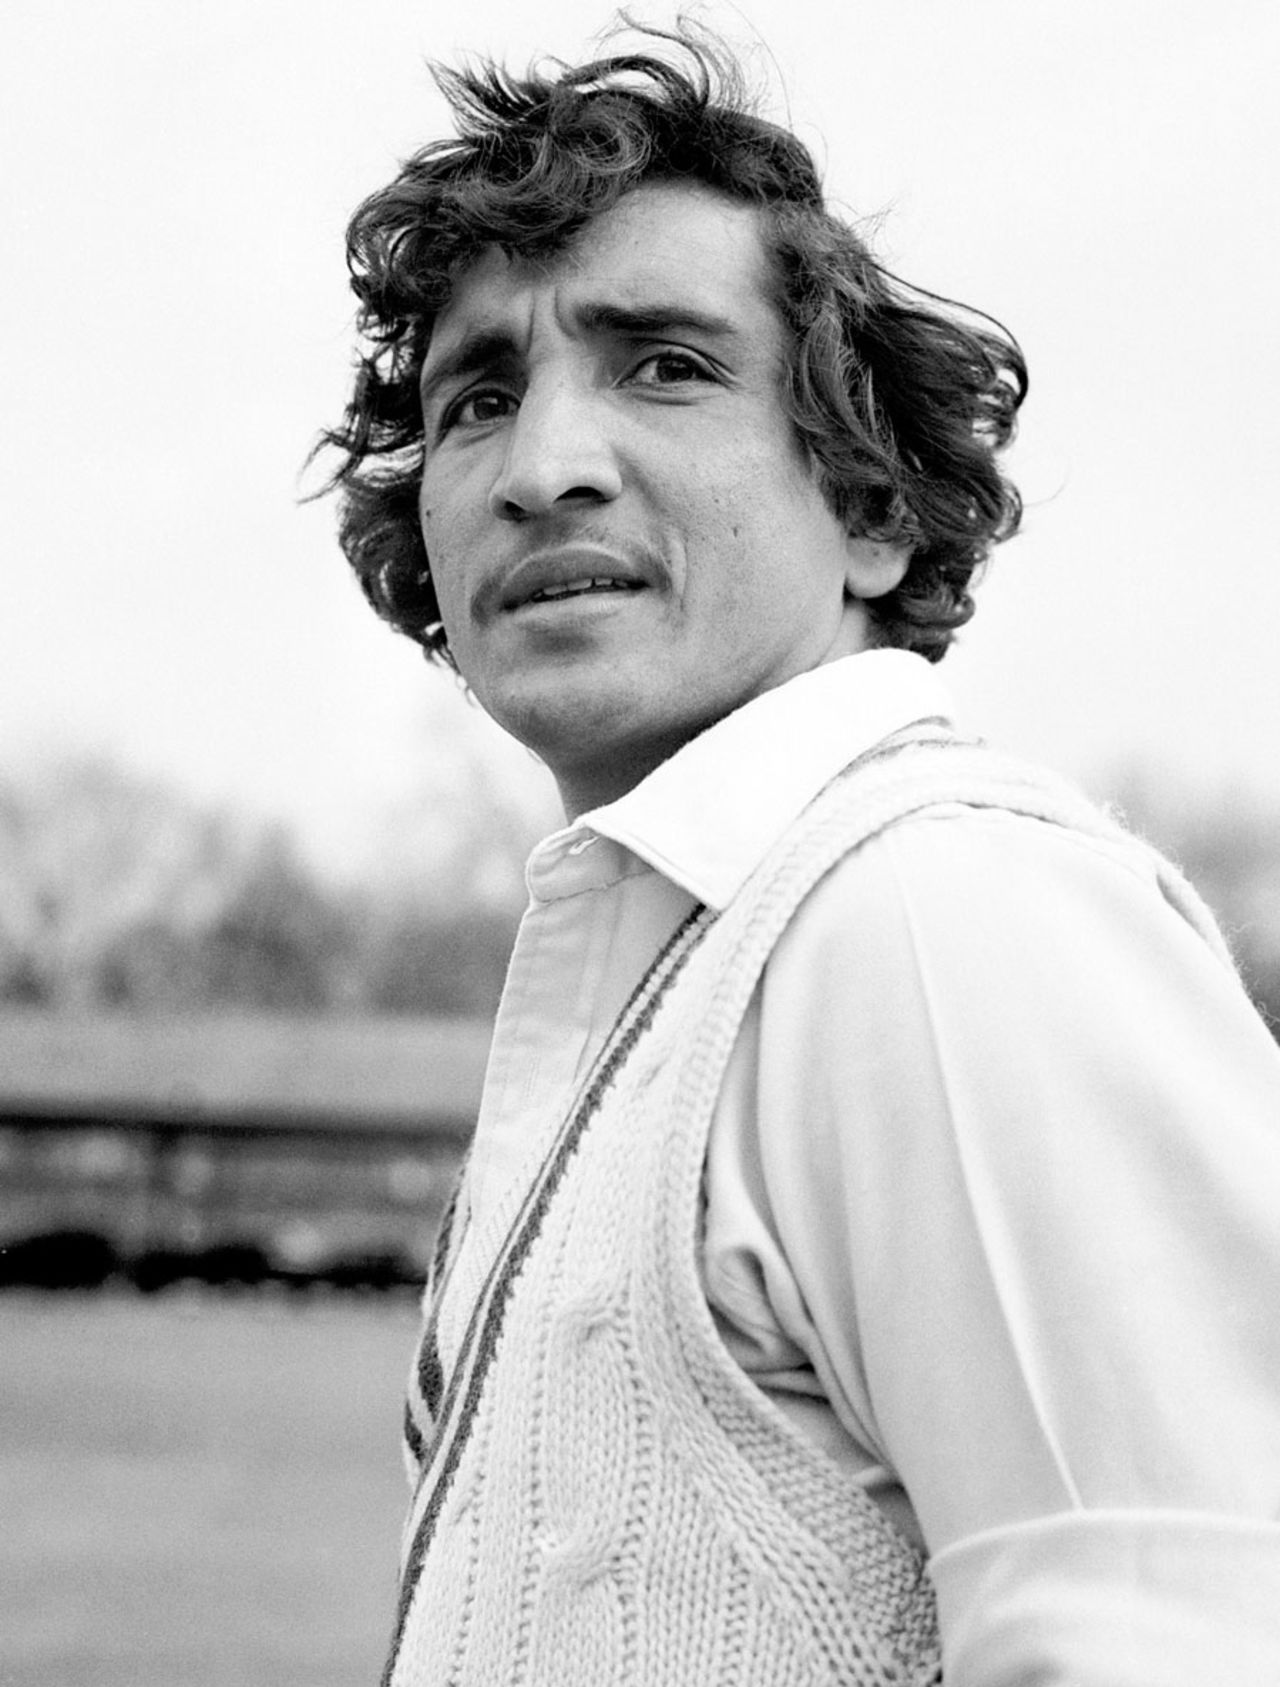 Abdul Qadir on Pakistan's tour of England, April 17, 1978